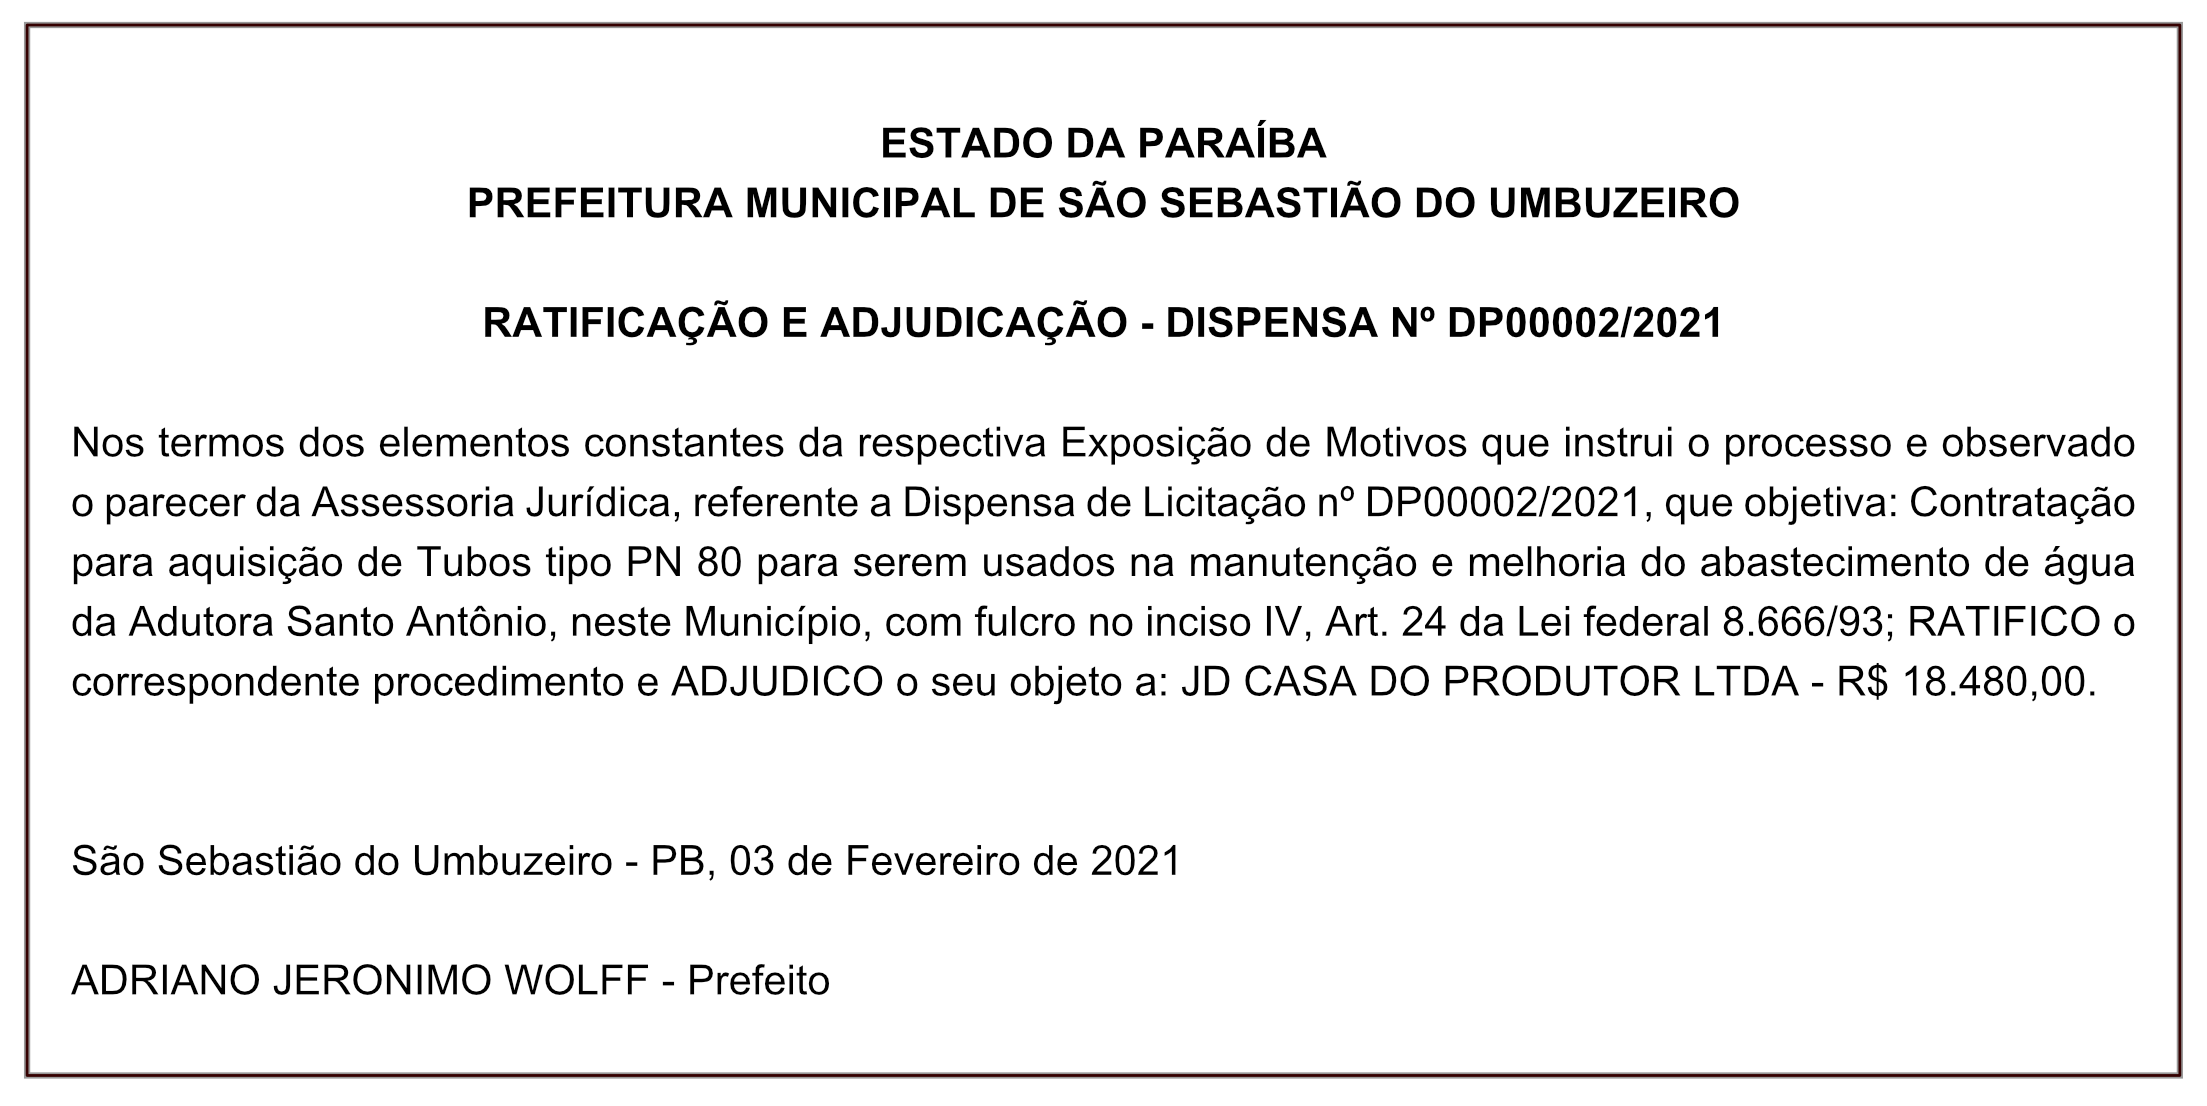 PREFEITURA MUNICIPAL DE SÃO SEBASTIÃO DO UMBUZEIRO – RATIFICAÇÃO E ADJUDICAÇÃO – DISPENSA Nº DP00002/2021